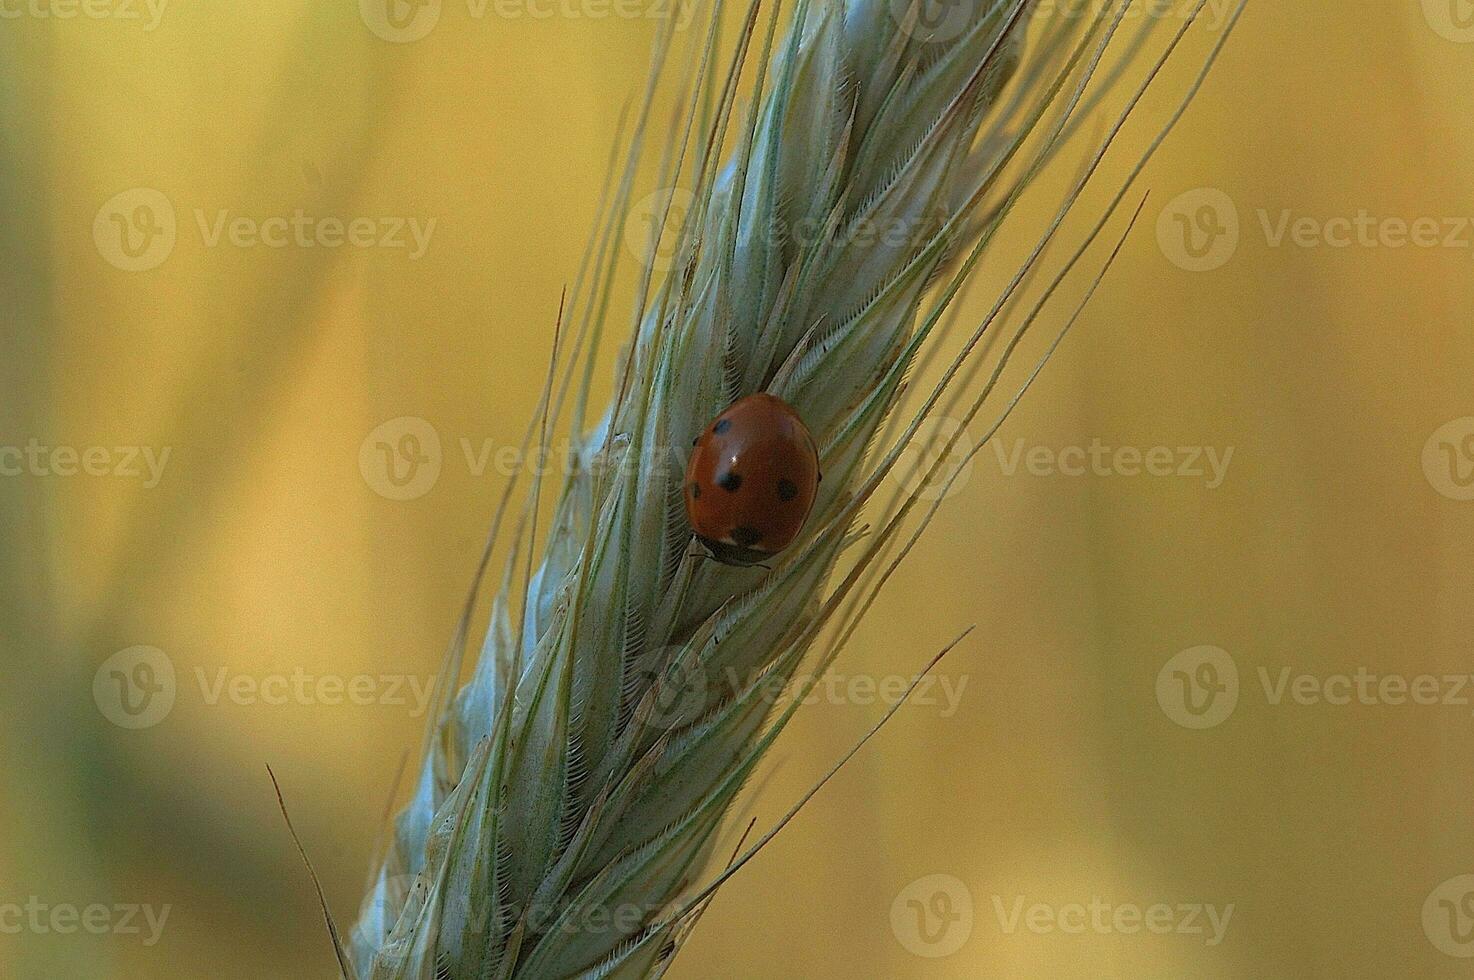 små delikat nyckelpiga i närbild Sammanträde på en råg öron på en neutral bakgrund foto